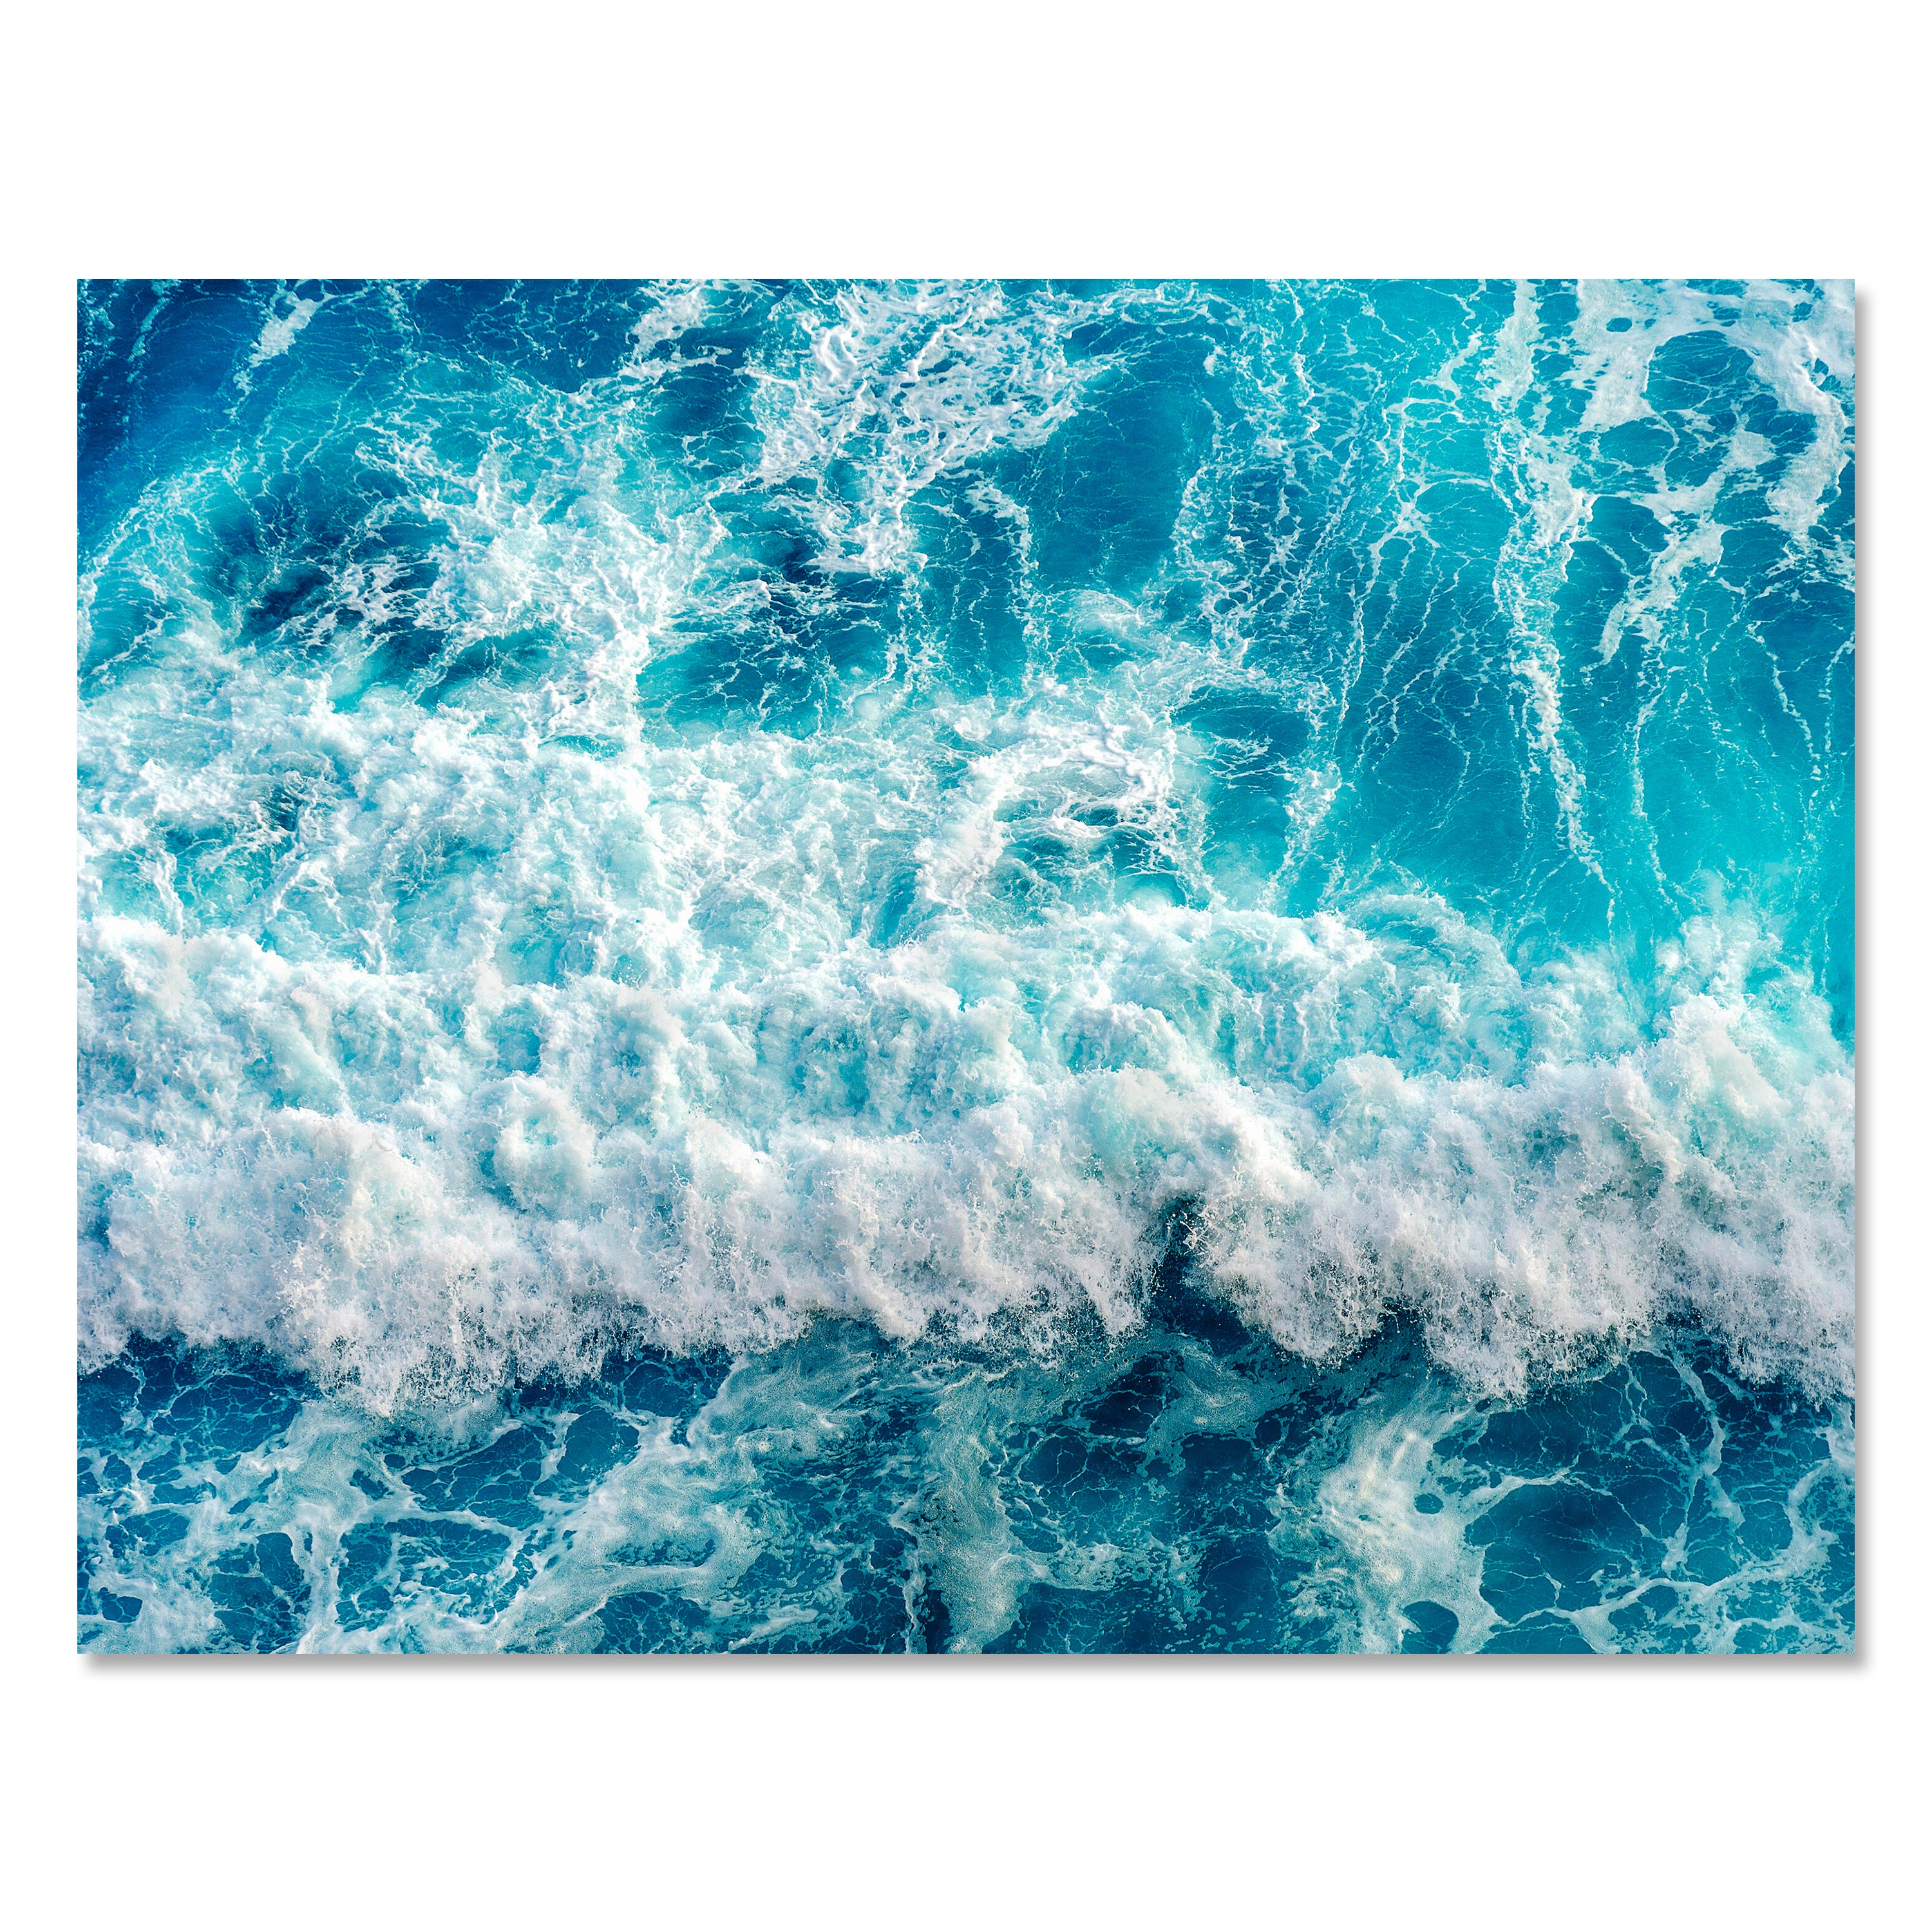 Leinwandbild Meer & Wasser, Querformat, Raues Meer 2 M0112 kaufen - Bild 1